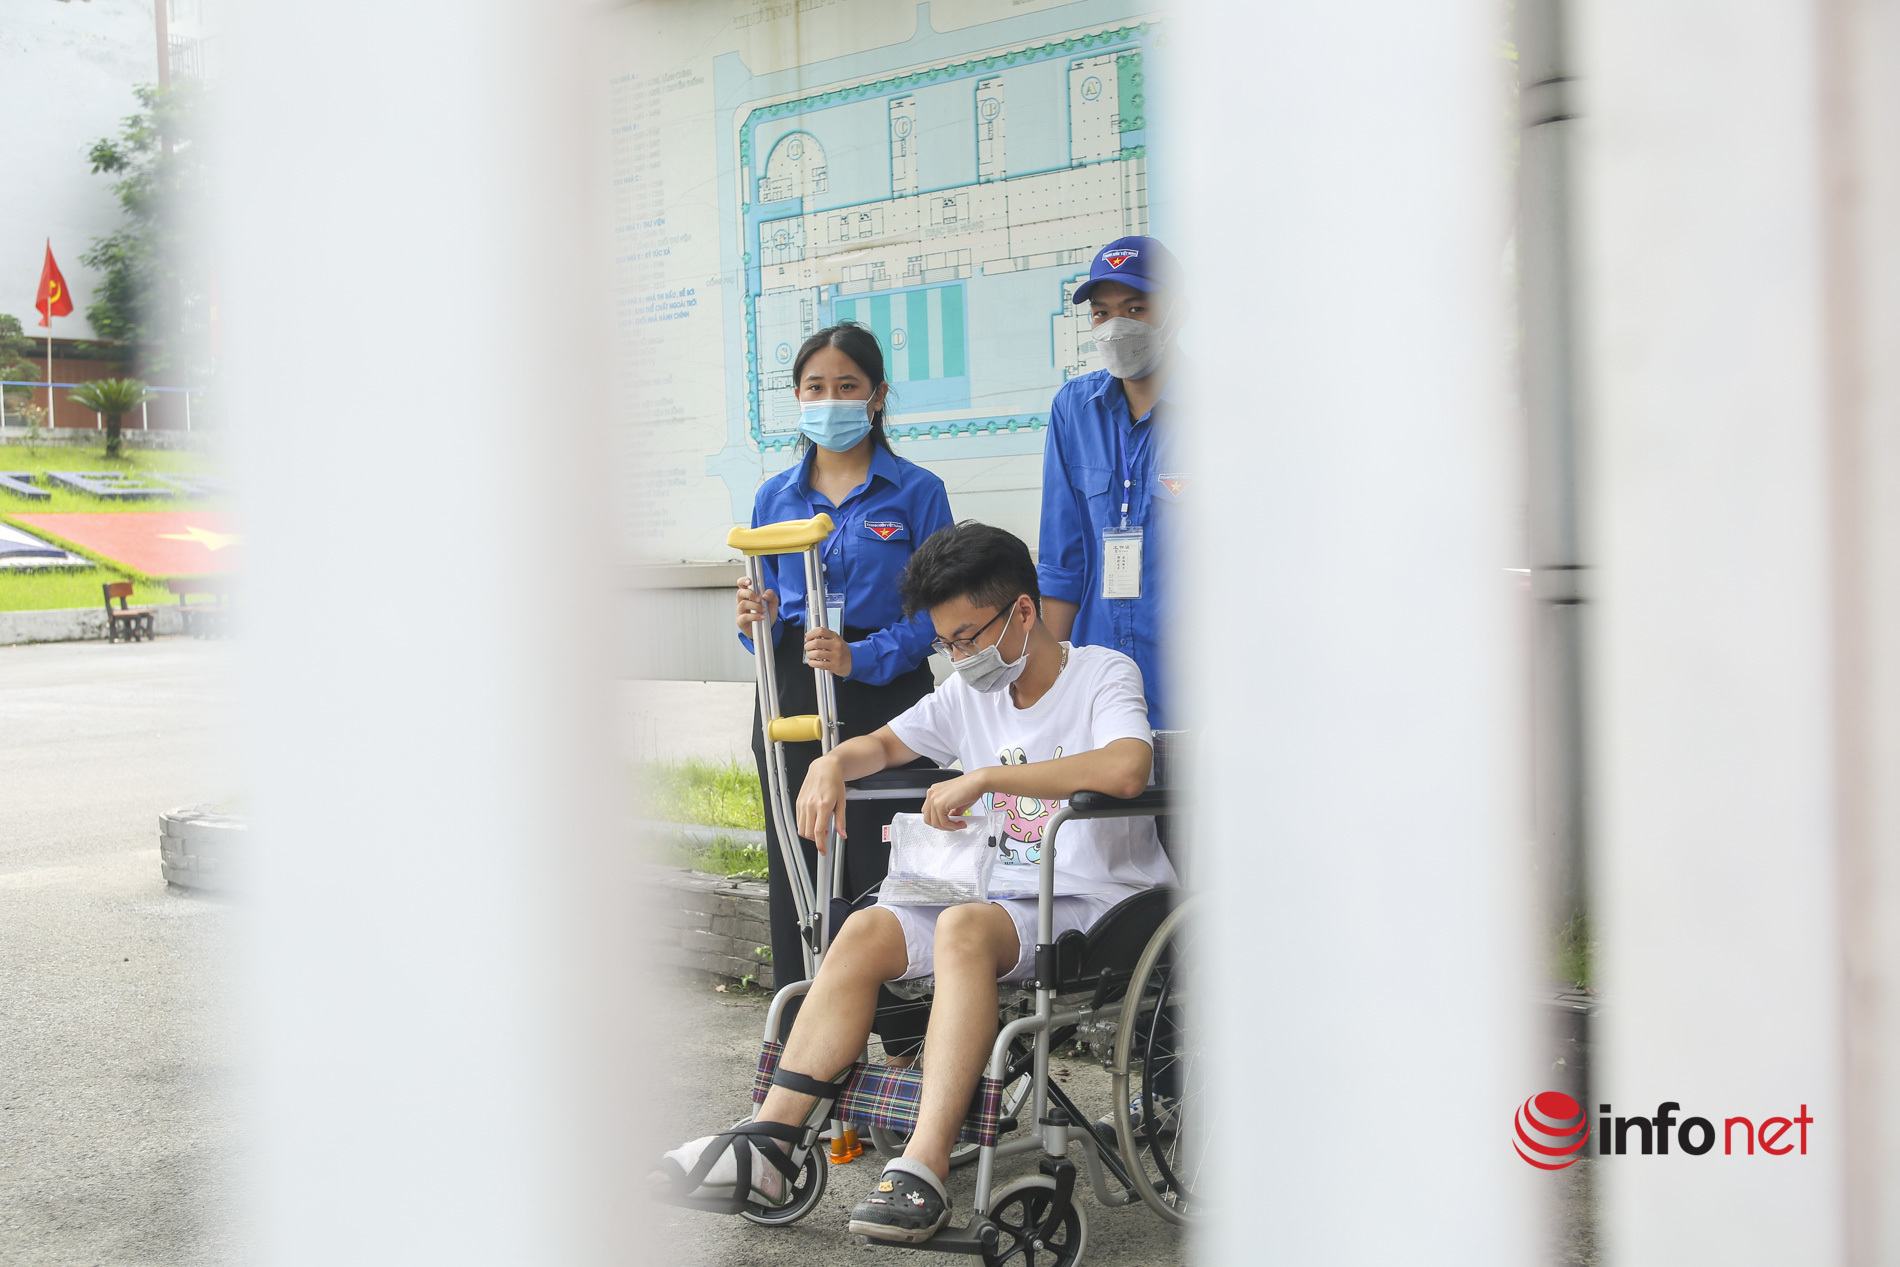 Hà Nội: Thí sinh ngồi xe lăn đi thi tự tin, vui vẻ, được hỗ trợ nhiệt tình